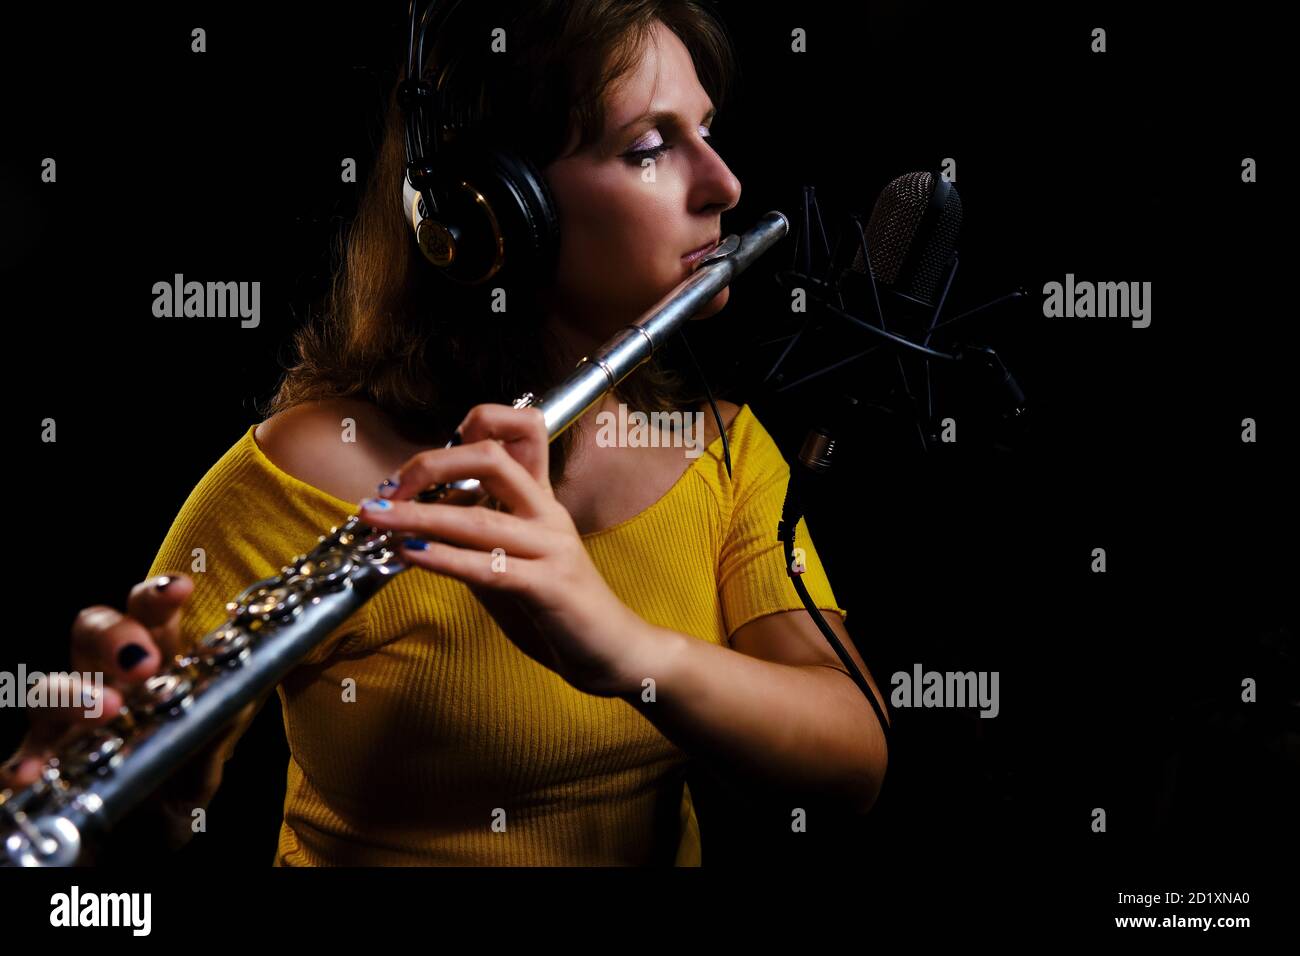 La flûte à écouteurs joue dans le studio d'enregistrement. Enregistrez des instruments de musique à vent avec un microphone professionnel. Femme flûtiste en jaune dre Banque D'Images